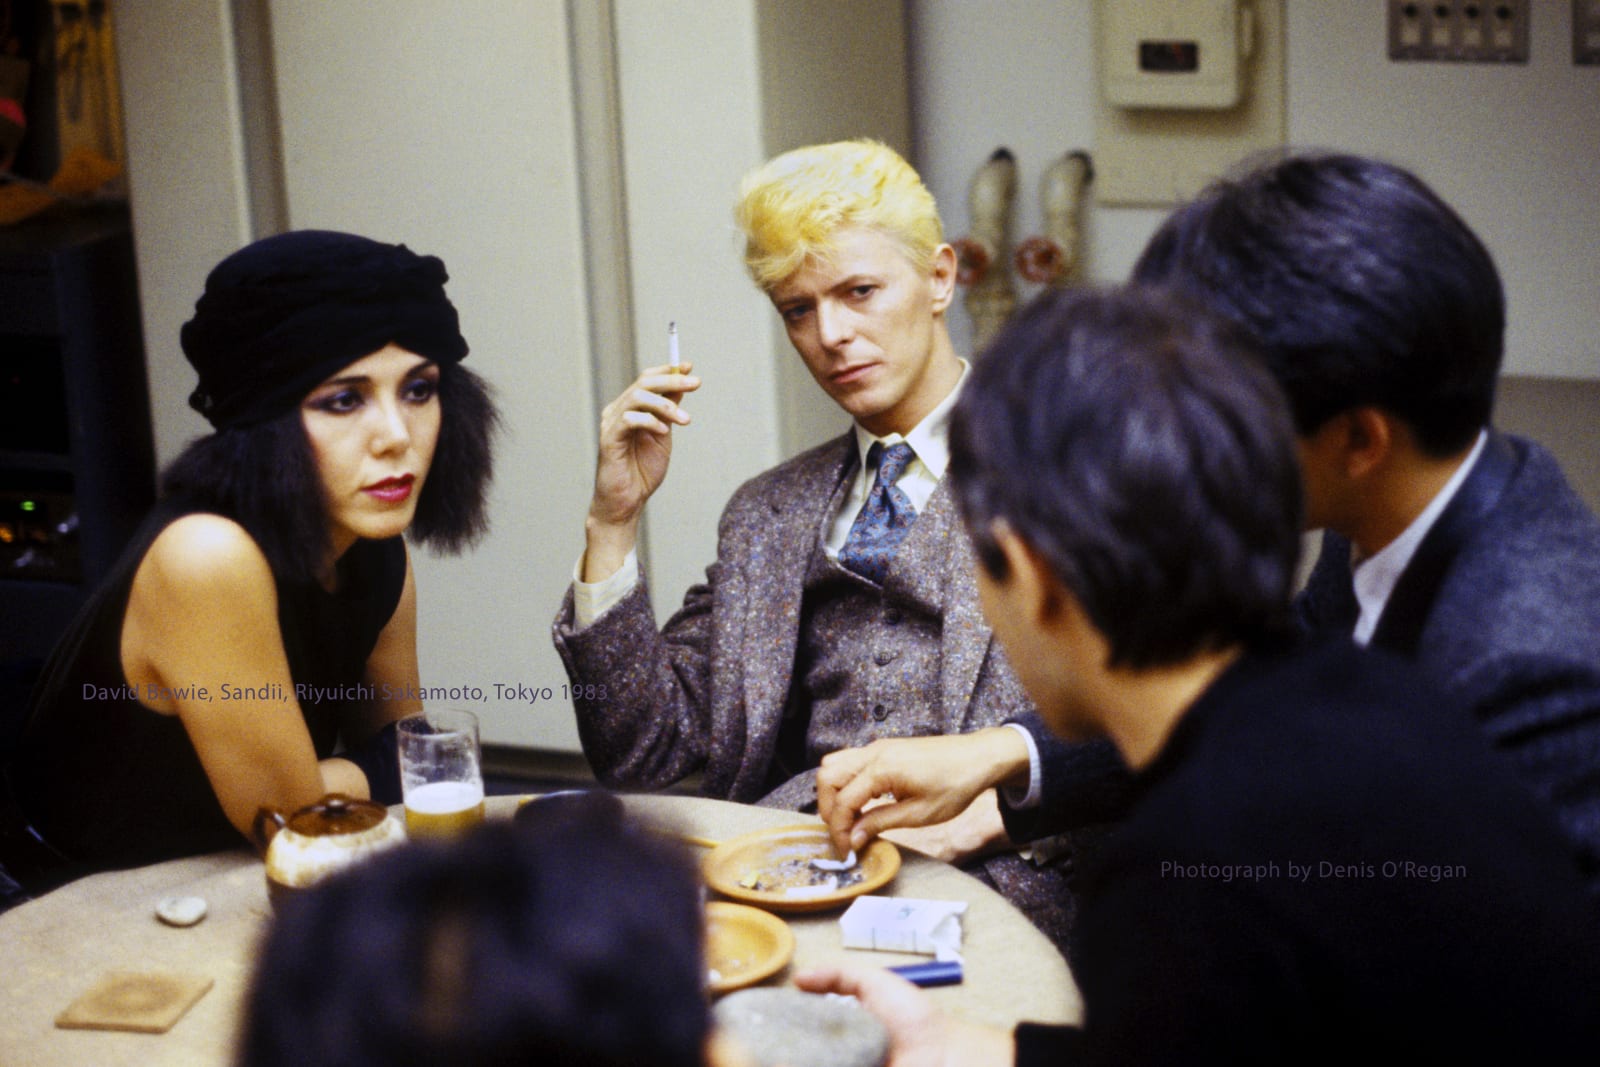 DAVID BOWIE, Bowie, Sandii, Riyuichi Sakamoto, 1983